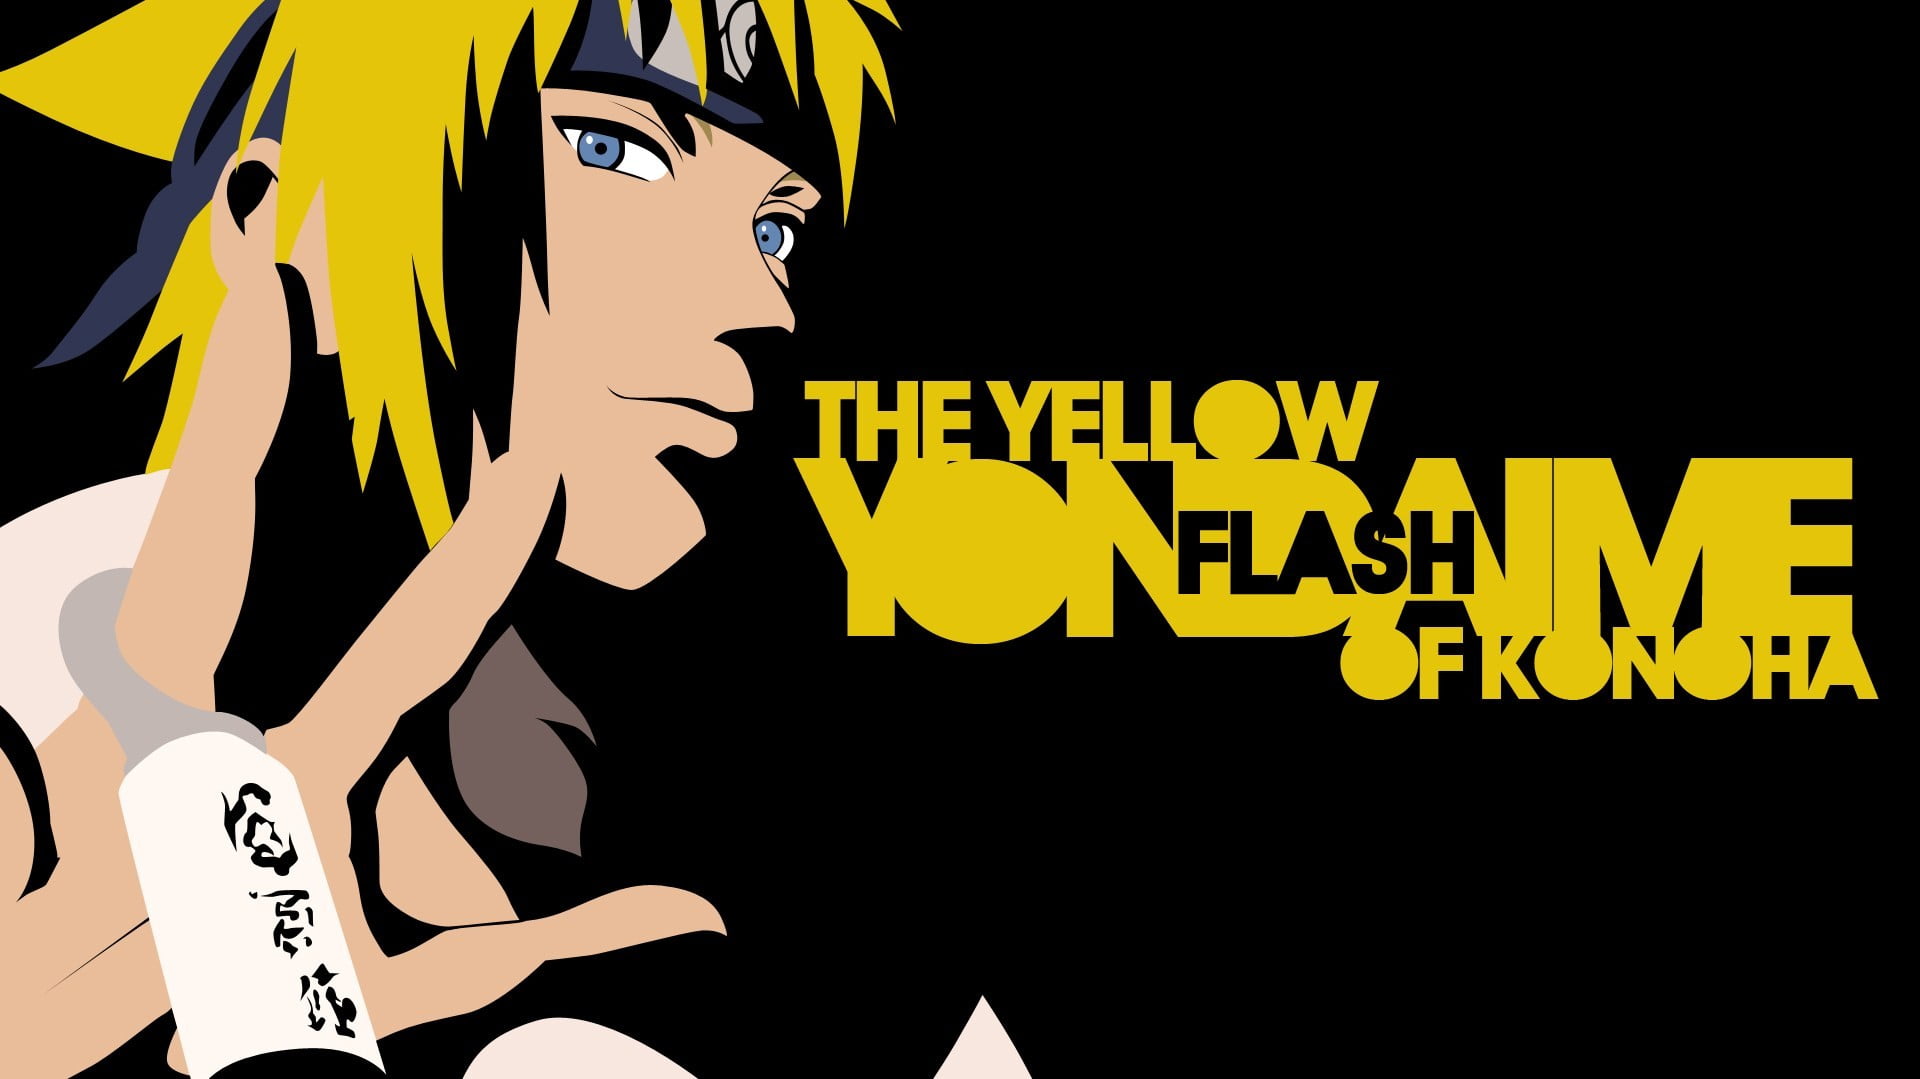 The Yellow Flash Yondaimi Of Konoha Minato Namikaze HD Wallpaper